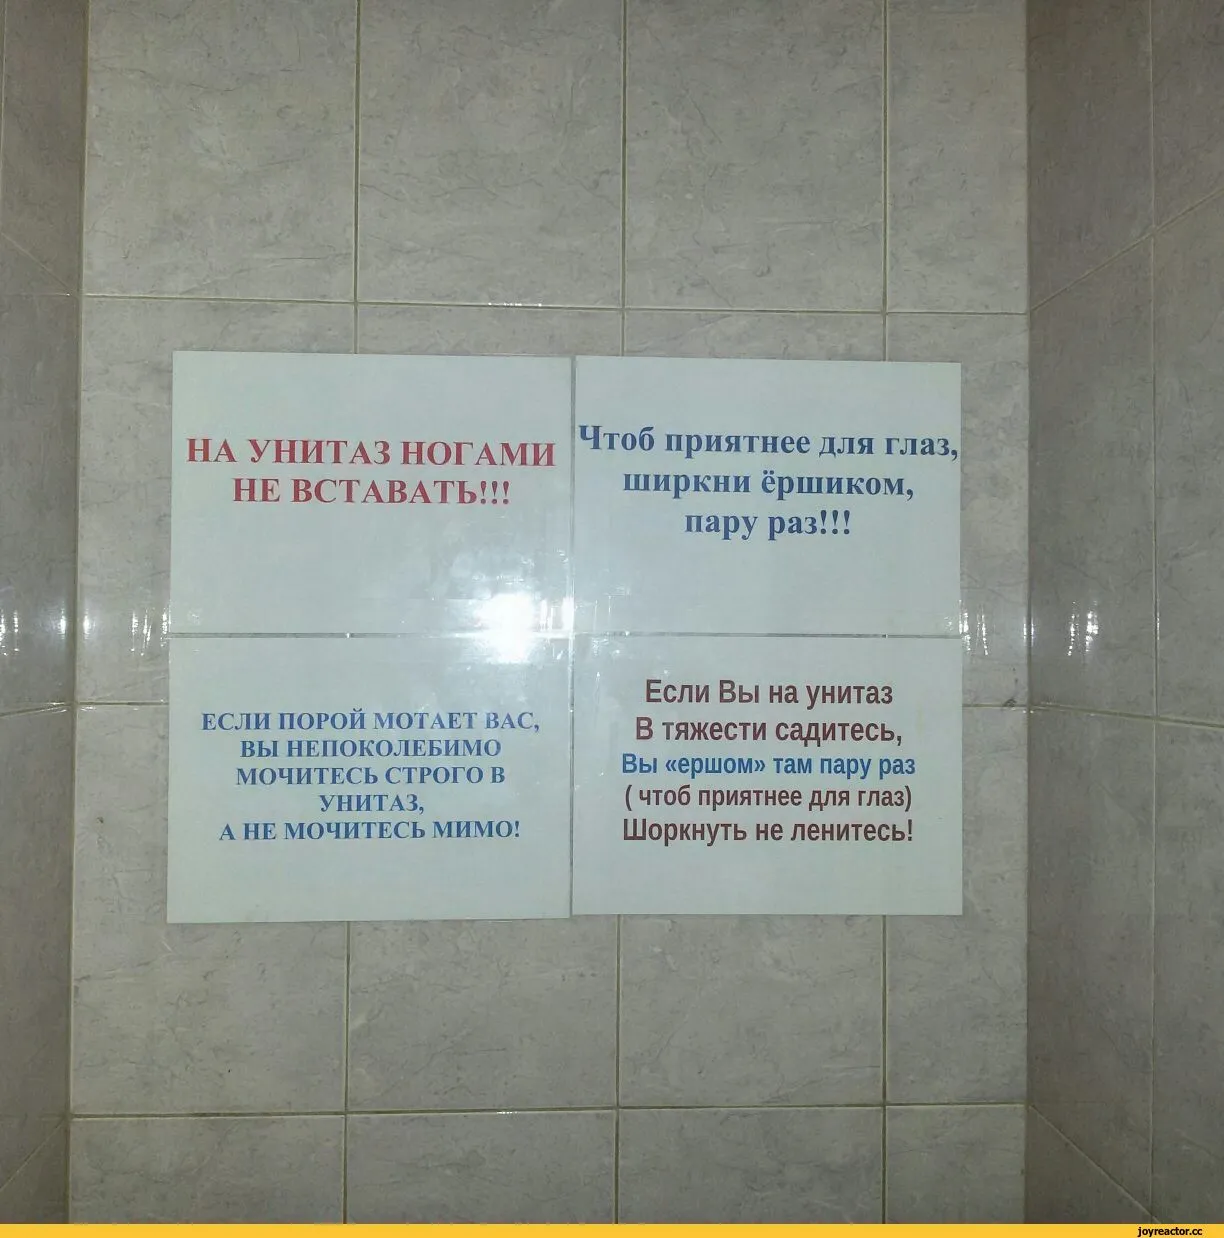 Не пописать до конца. Надпись туалет. Объявление в туалет. Смешные надписи в туалете. Объявления для общественного туалета.